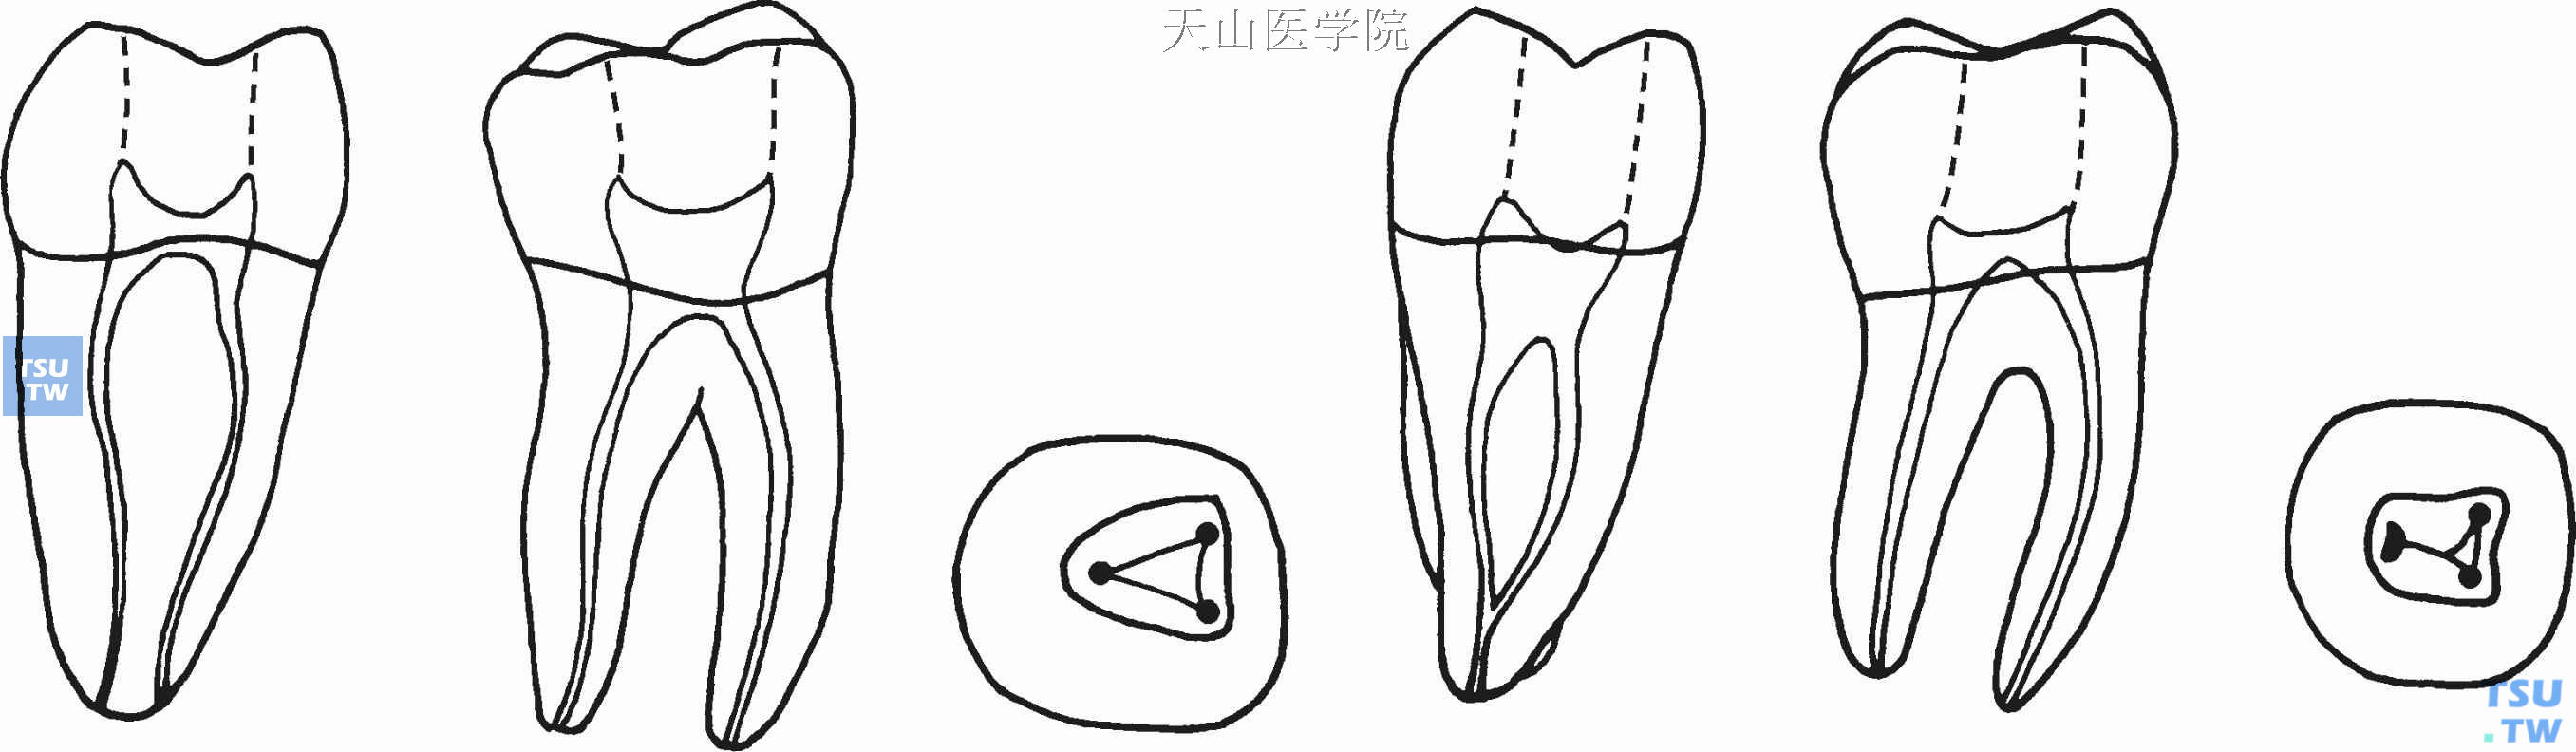 下颌磨牙根管形态及根管口位置